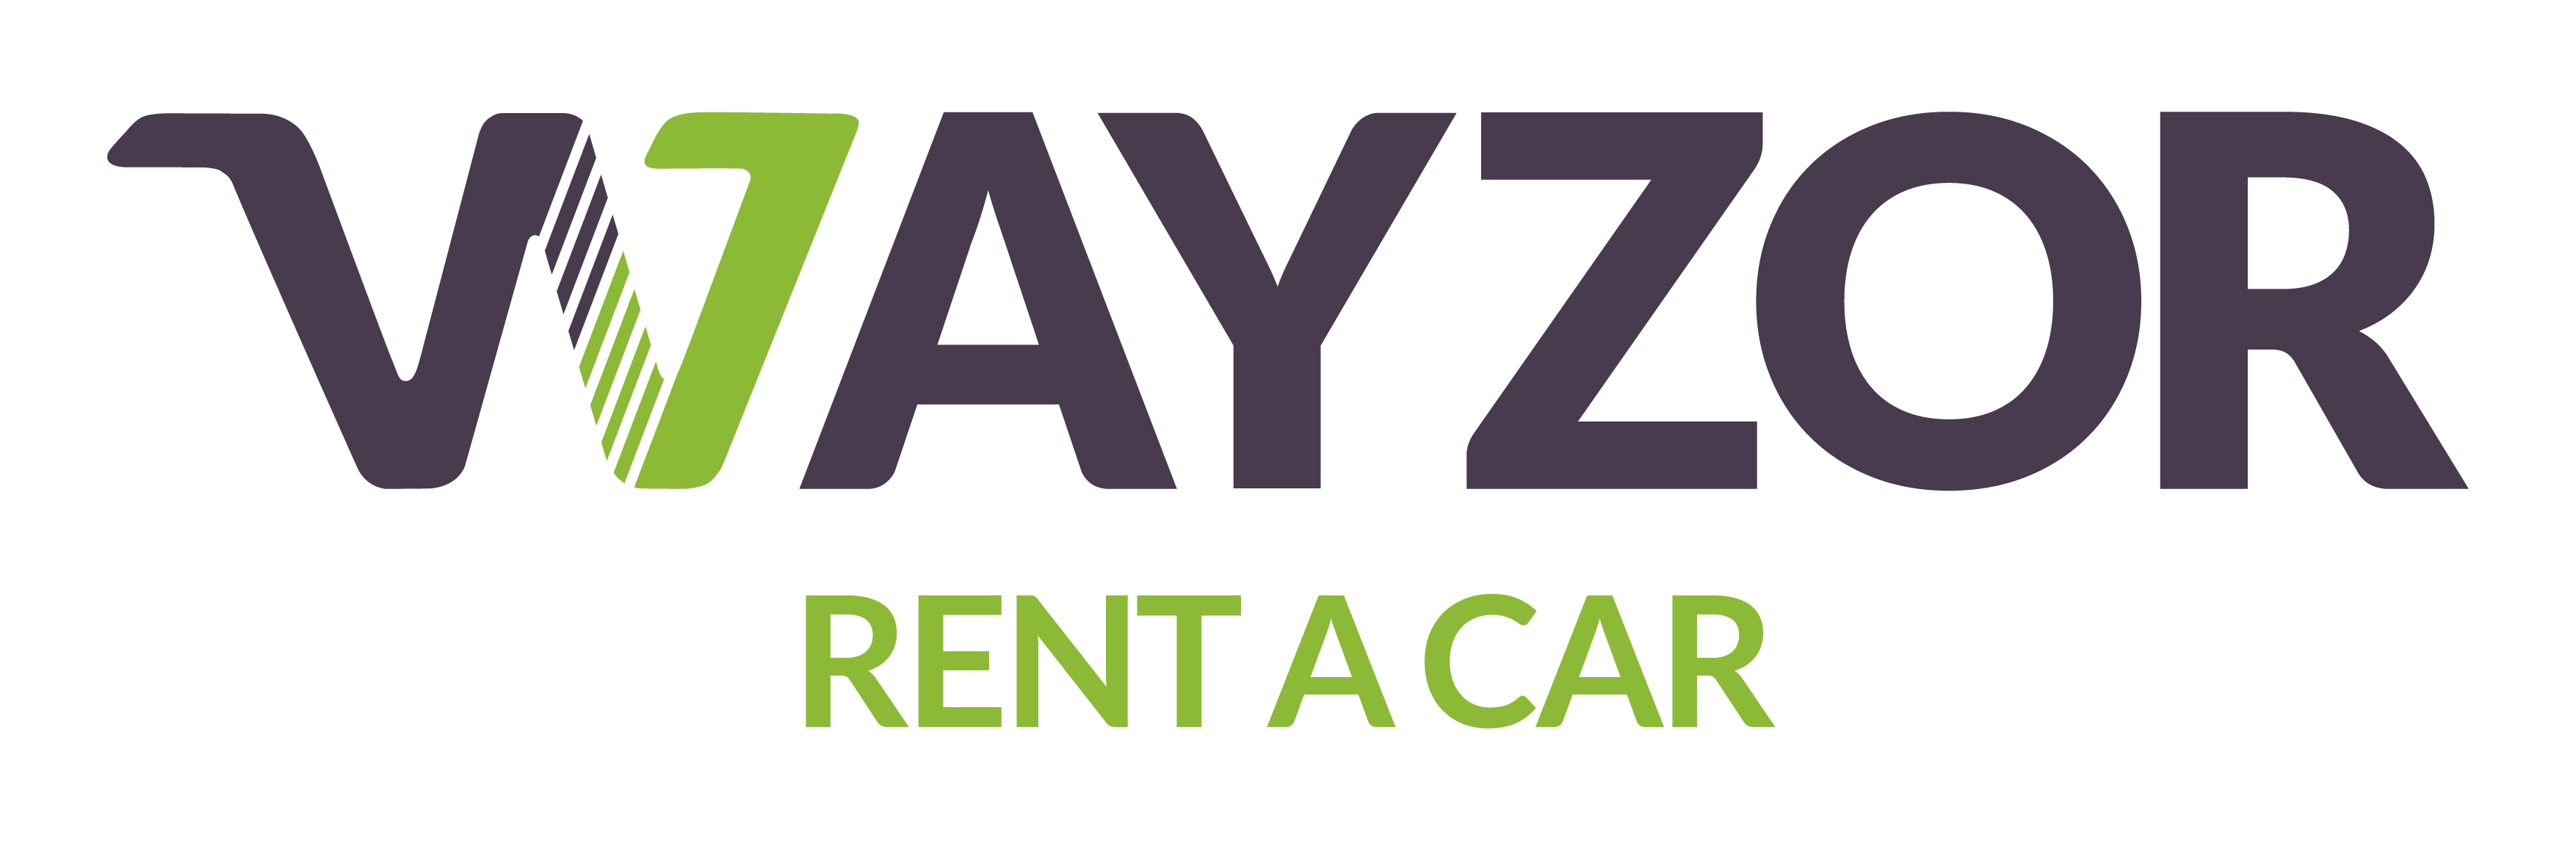 Wayzor Rent a car